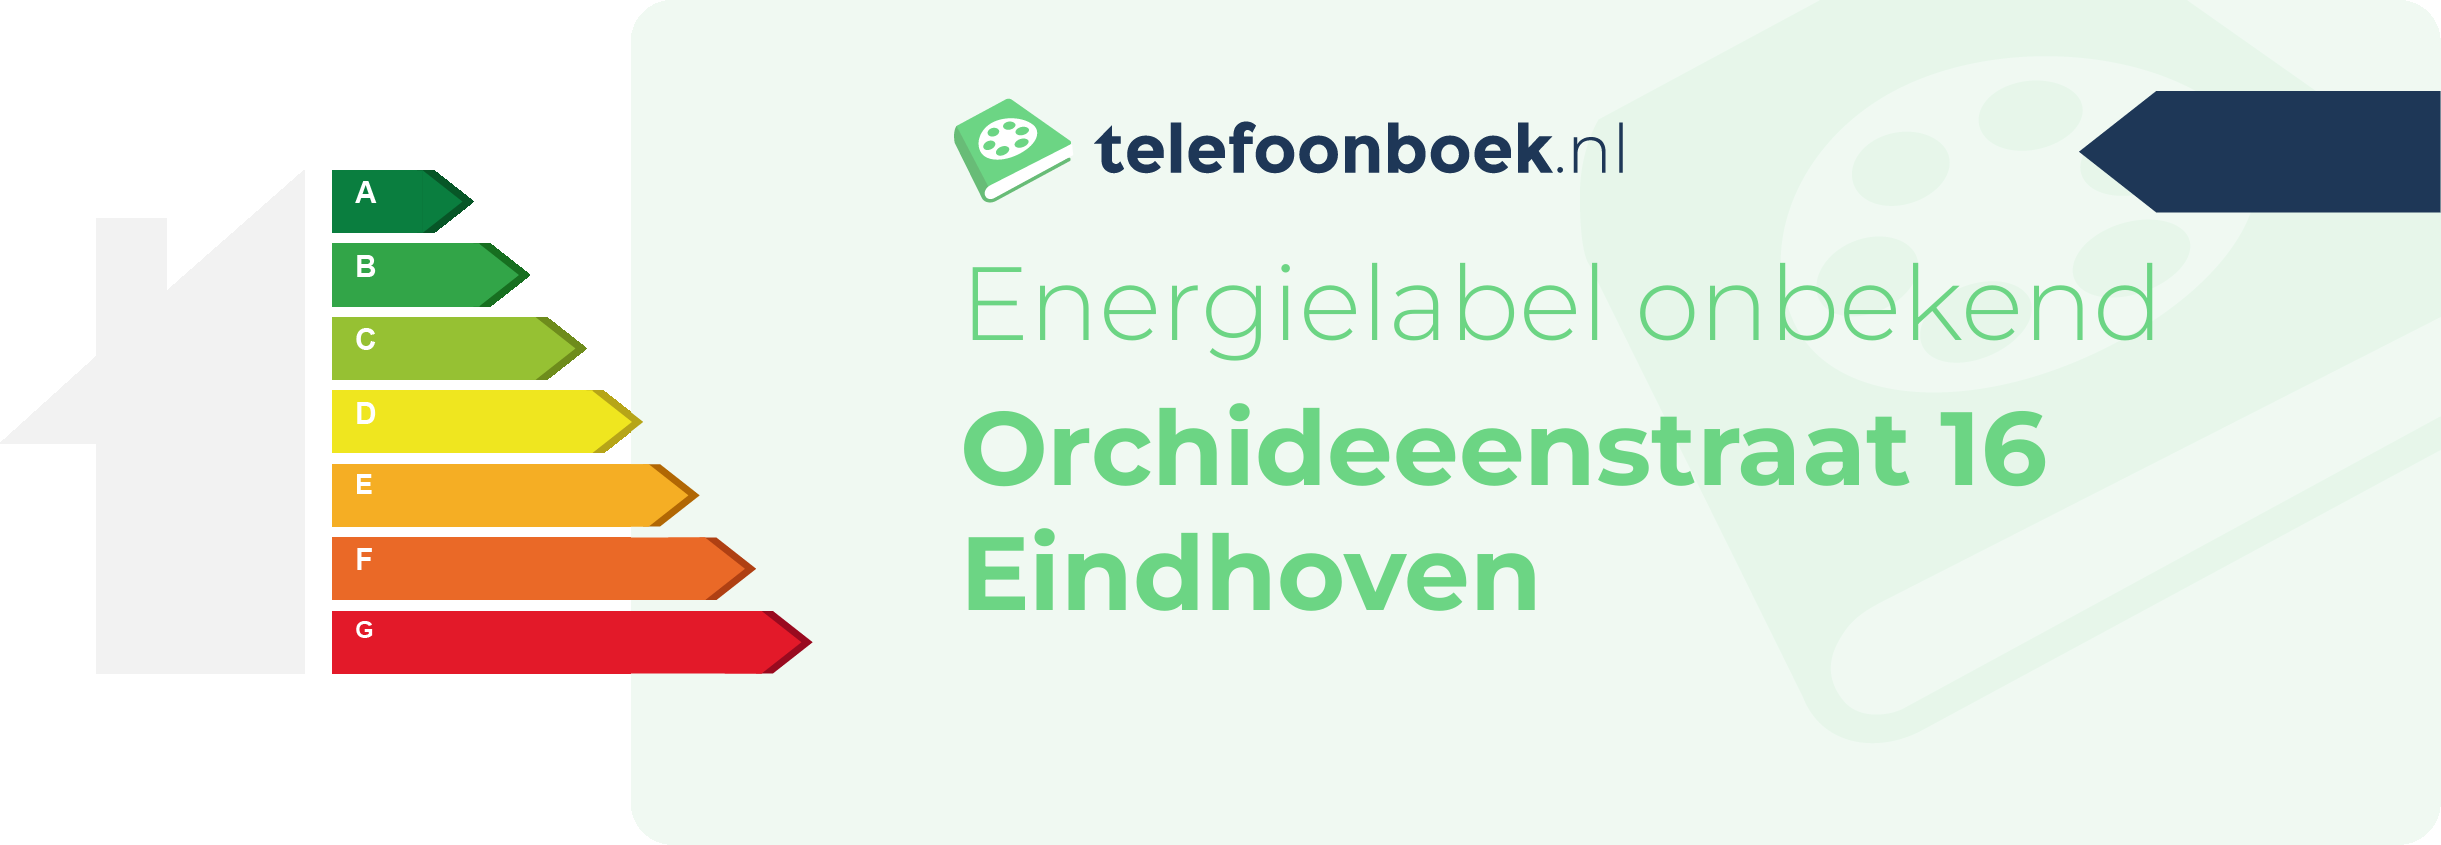 Energielabel Orchideeenstraat 16 Eindhoven